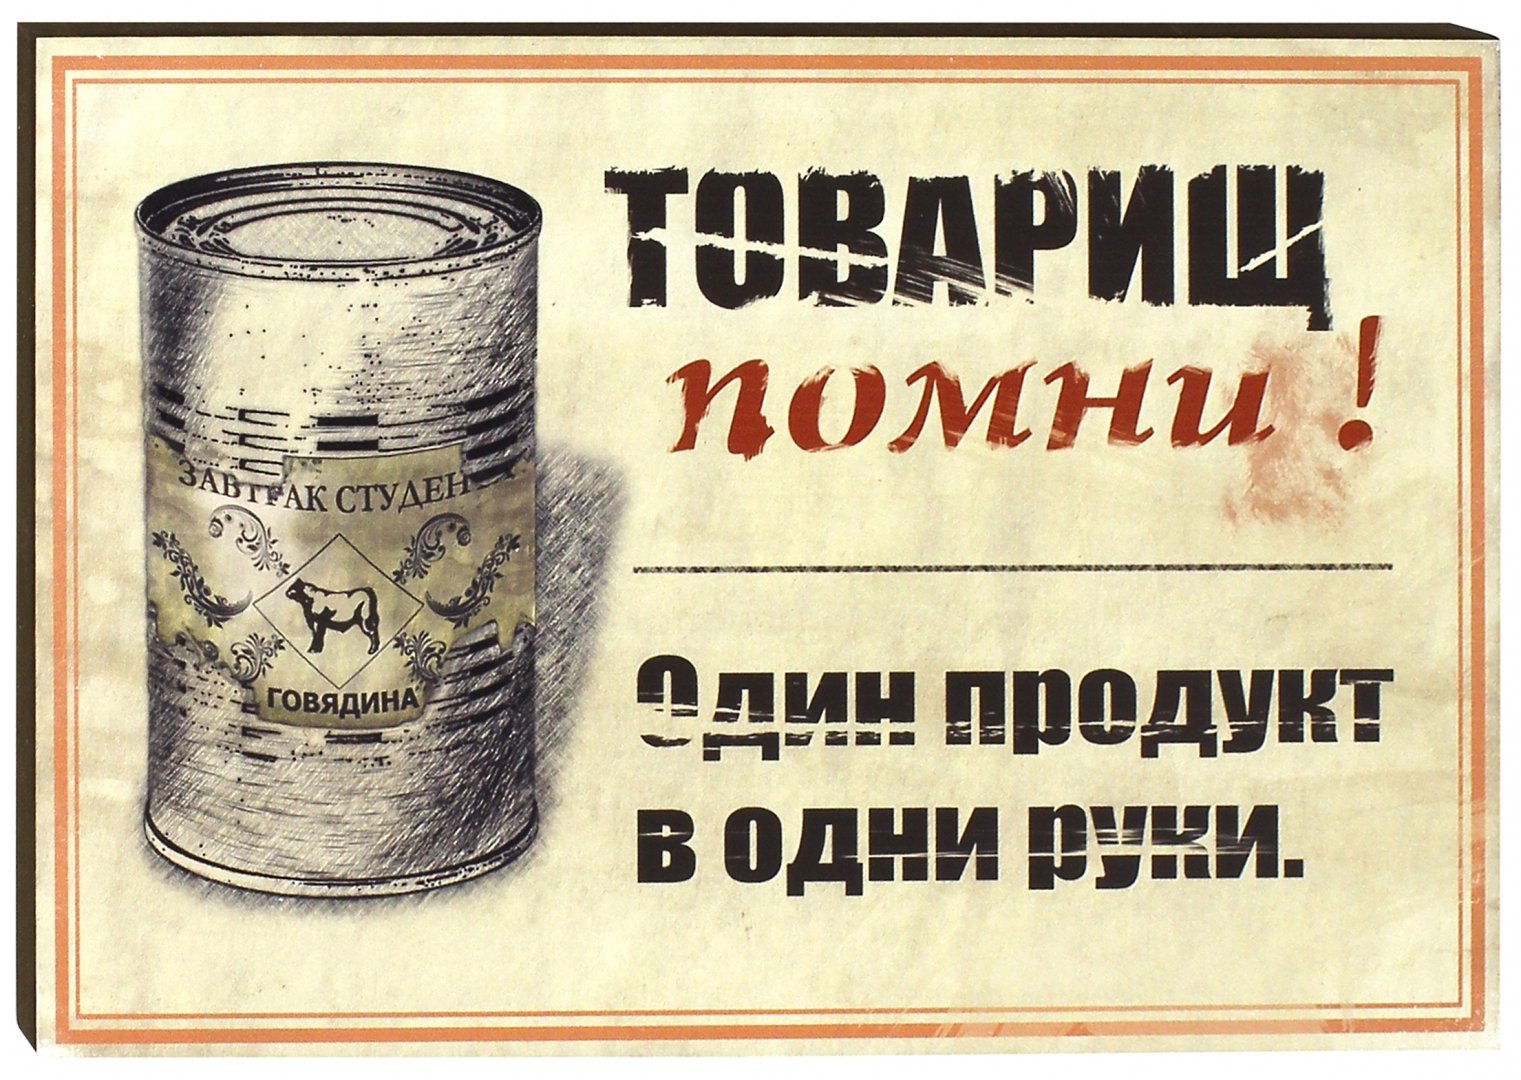 Вас тут не стояло. Надписи в Советском стиле. Советские плакаты о еде. Плакаты СССР буфет. Дефицит строго в одни руки.